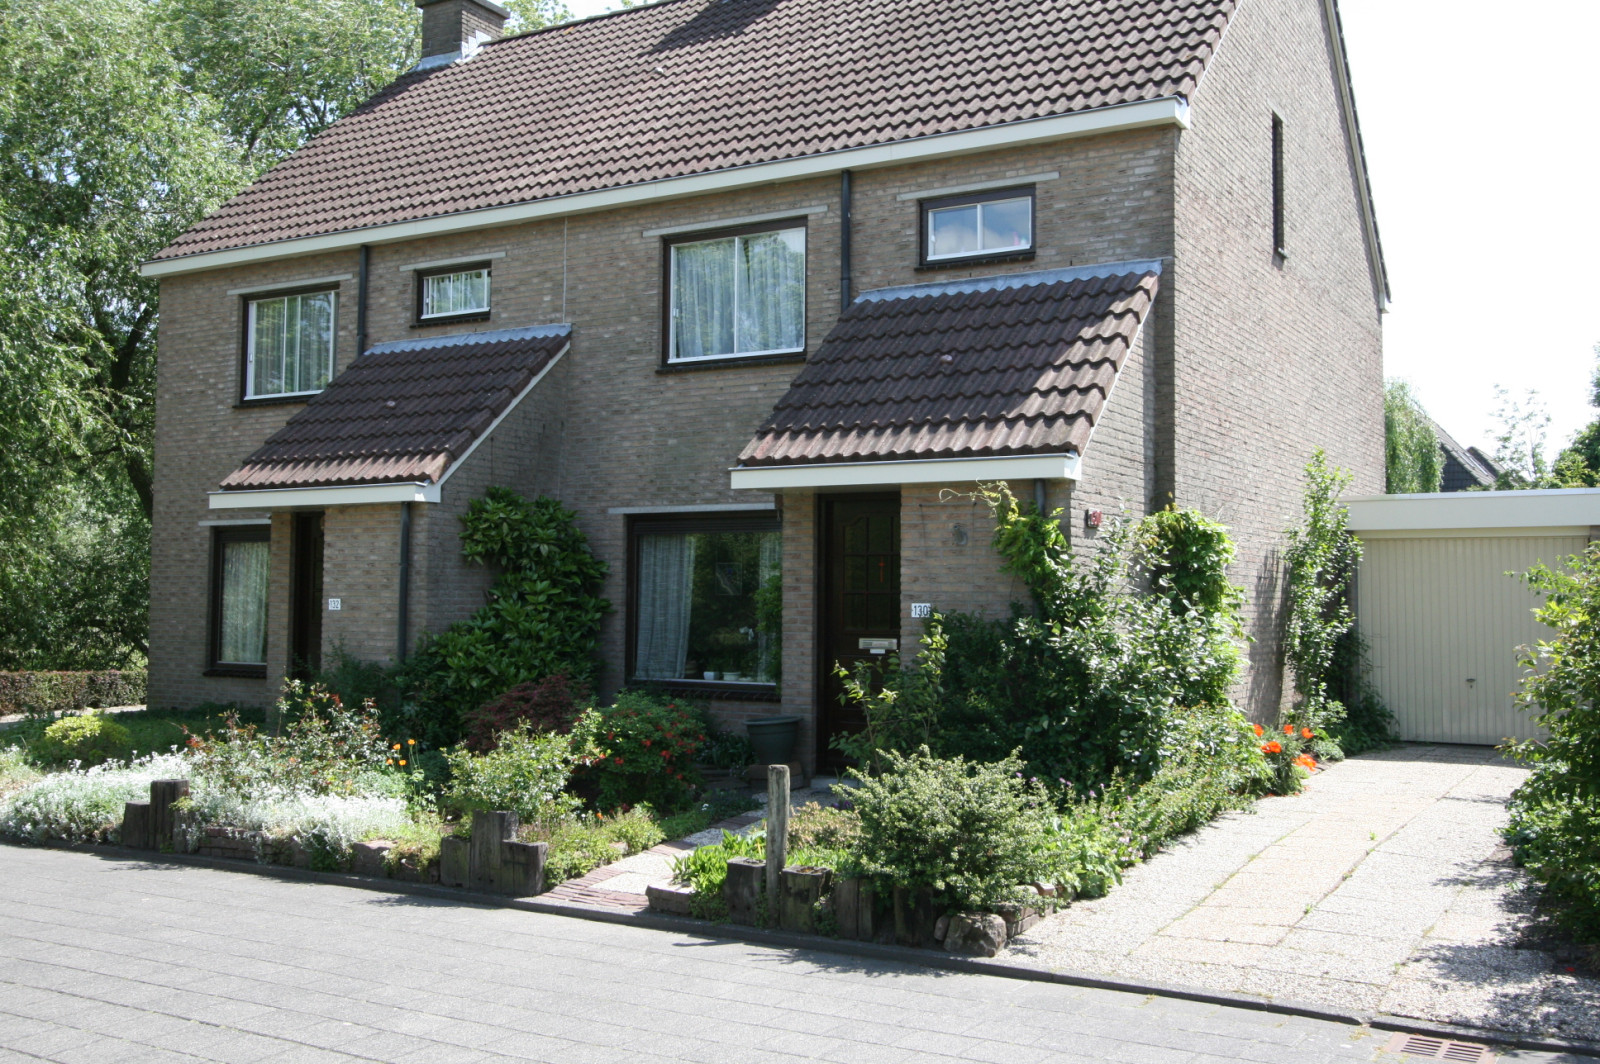 Bekijk foto 1/3 van house in Heerenveen